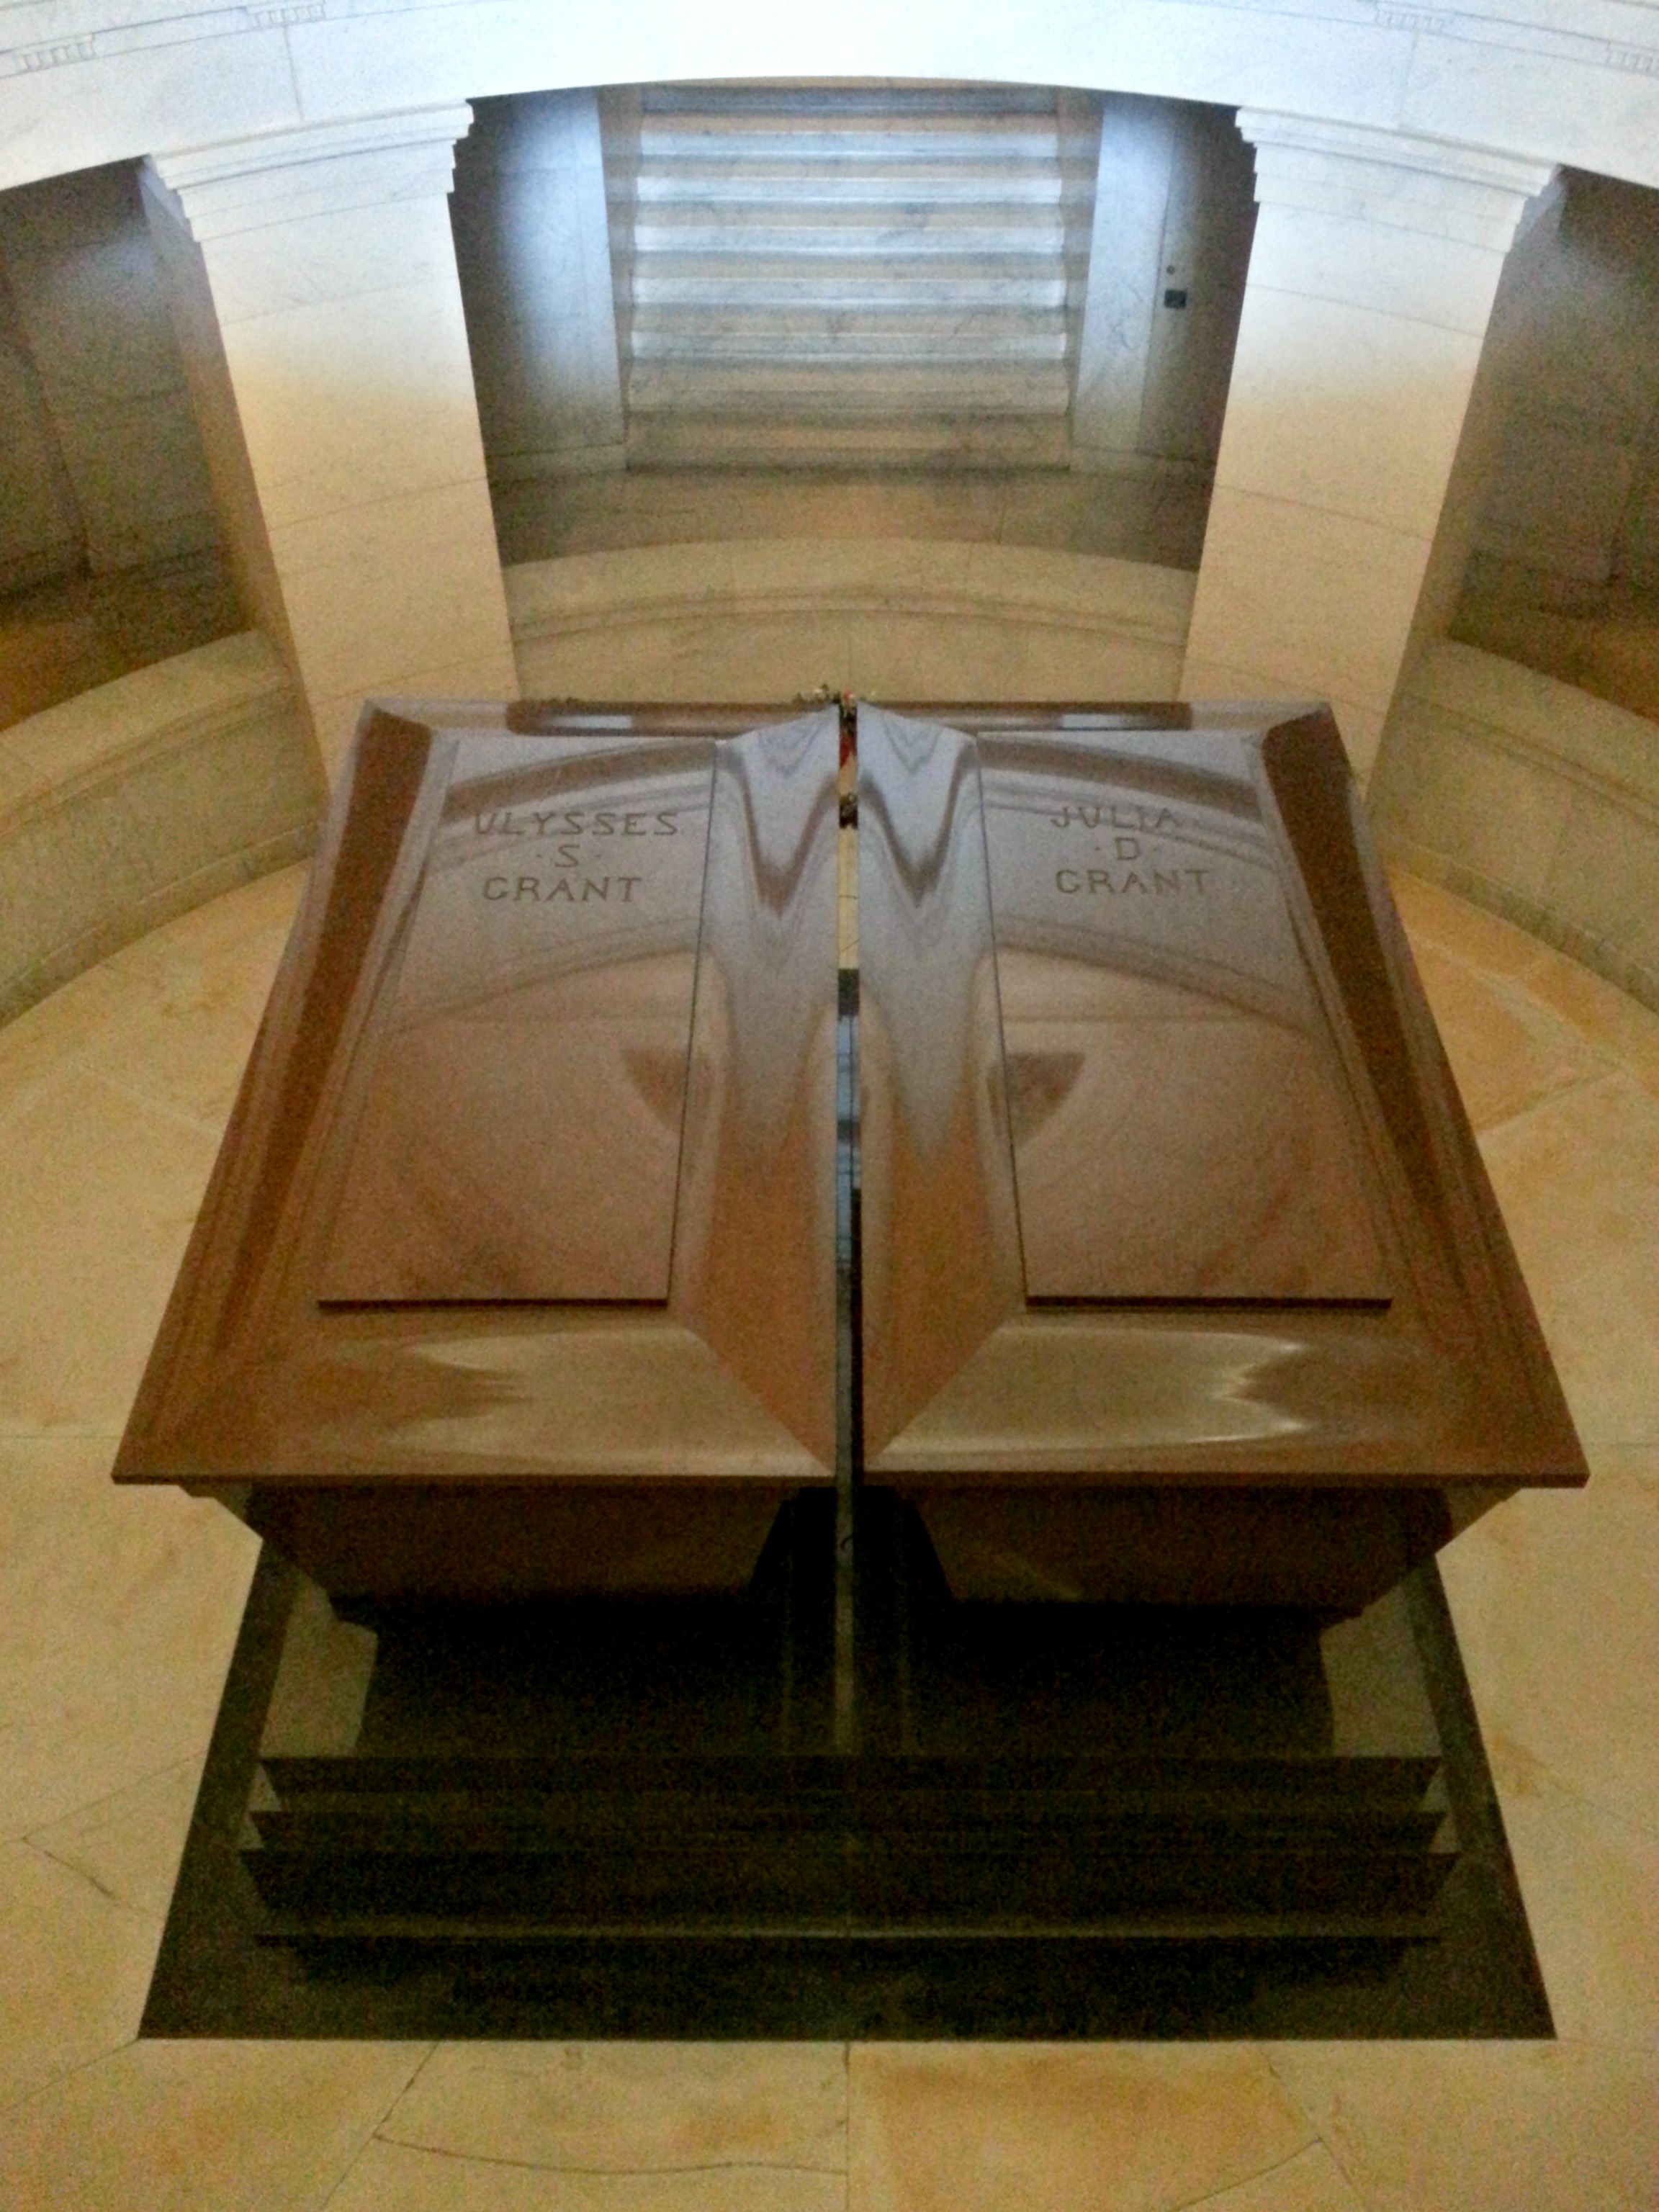 Grant's Coffin